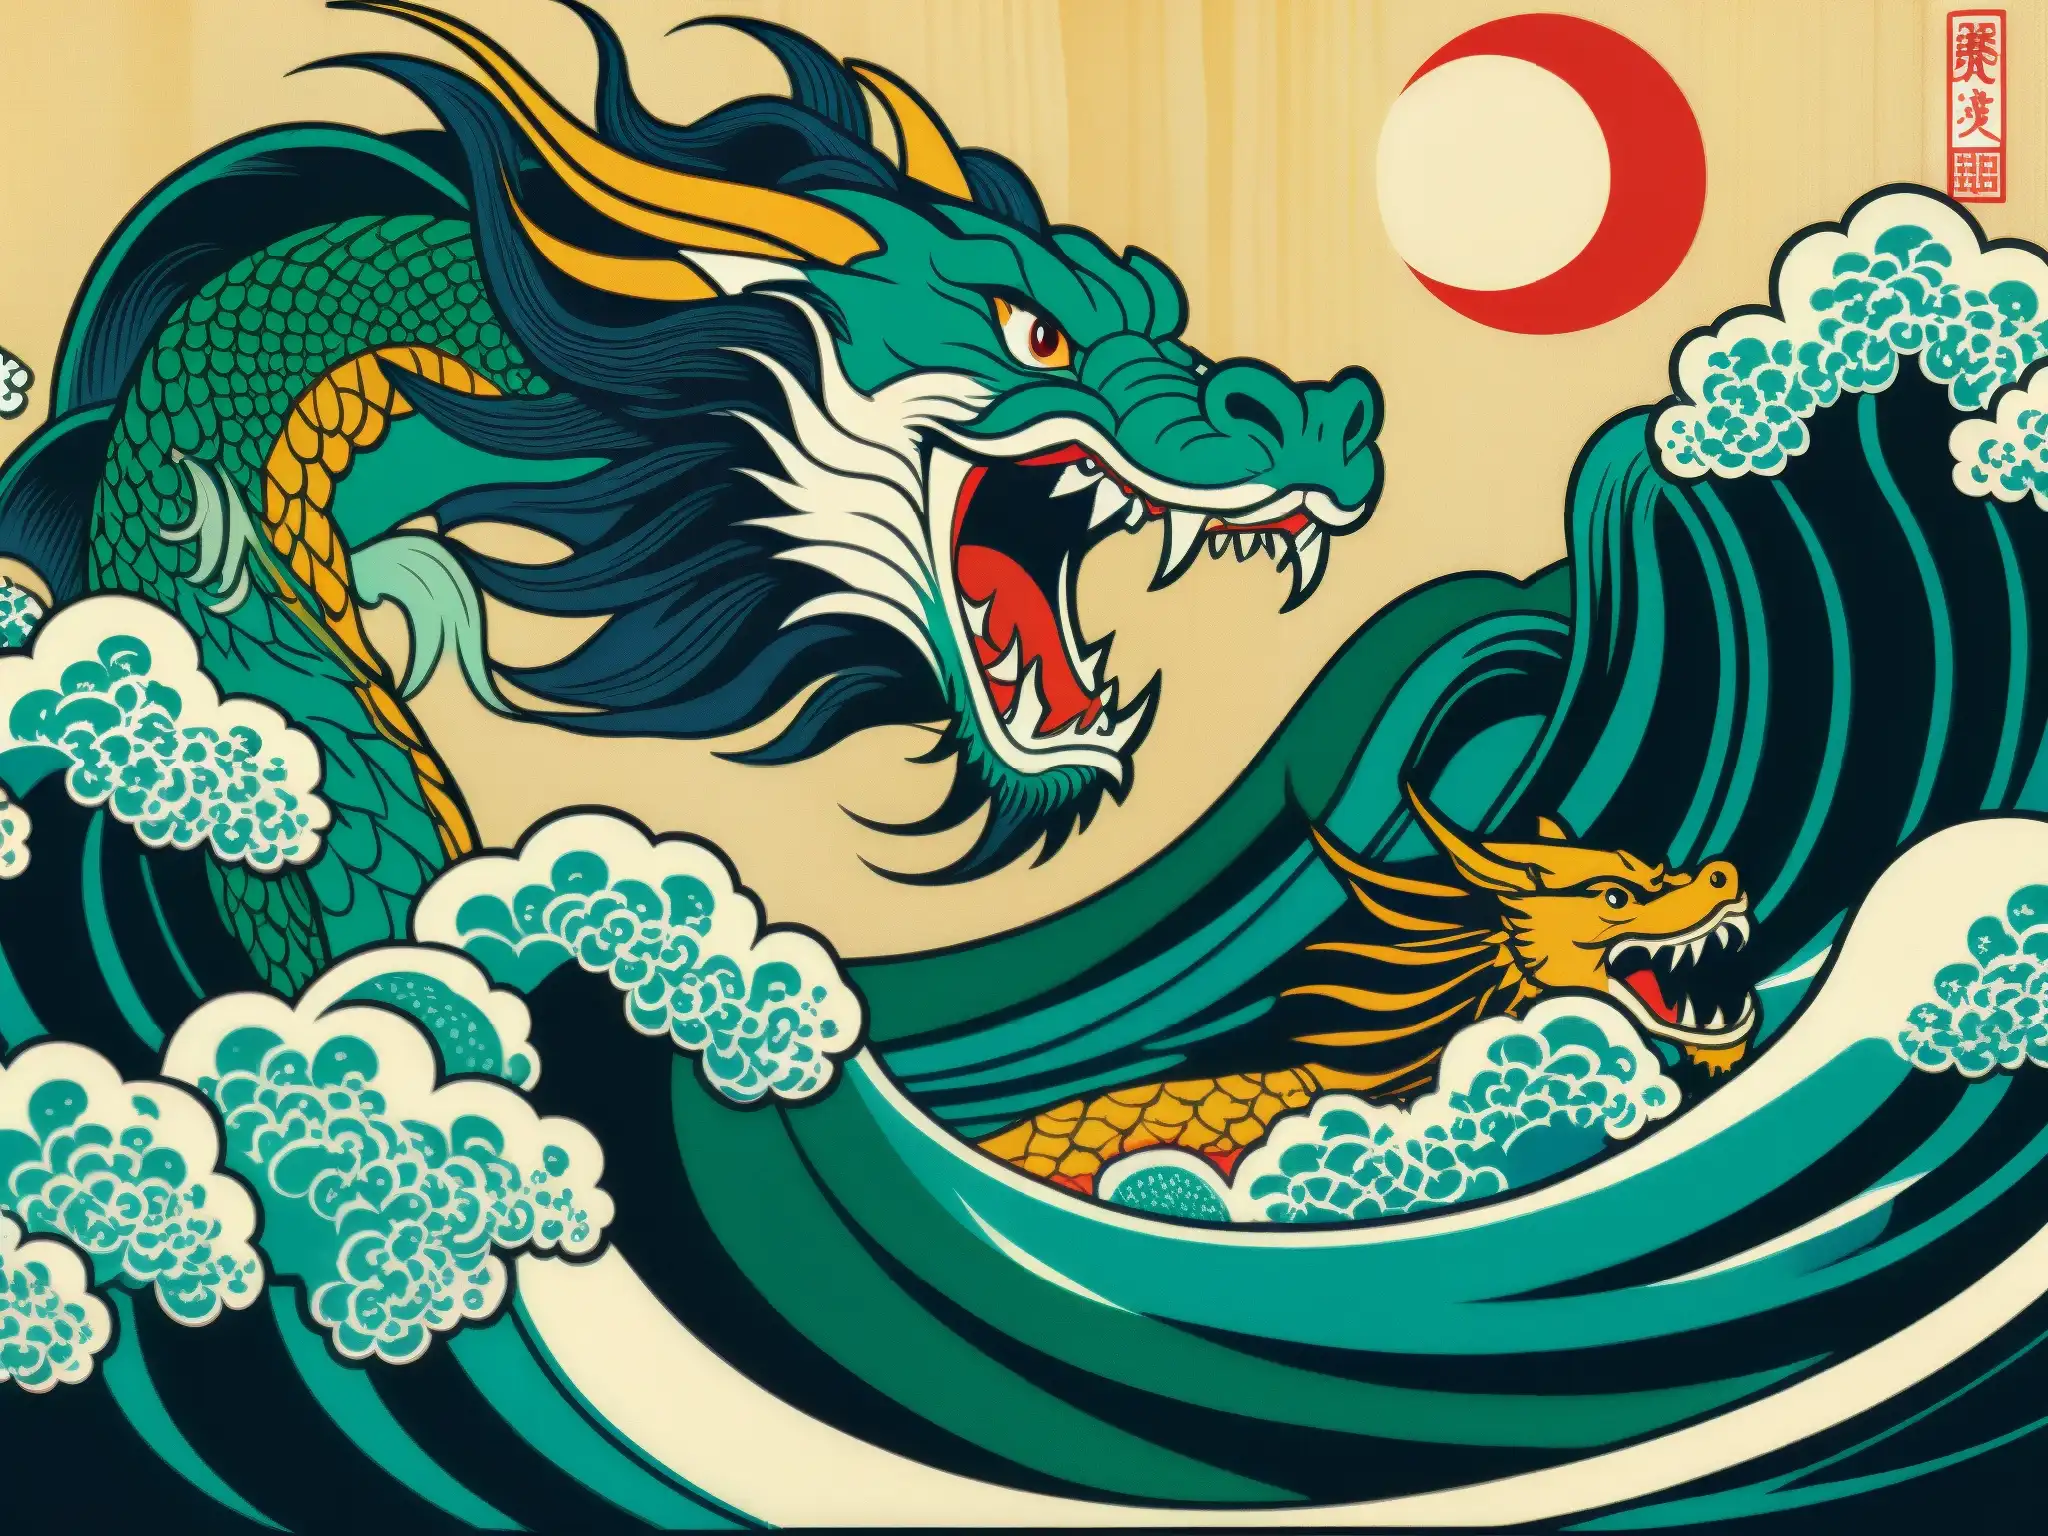 Una impactante imagen de un grabado japonés ukiyo-e que muestra los orígenes oscuros de la leyenda de la Sirena Dragón en la cultura japonesa